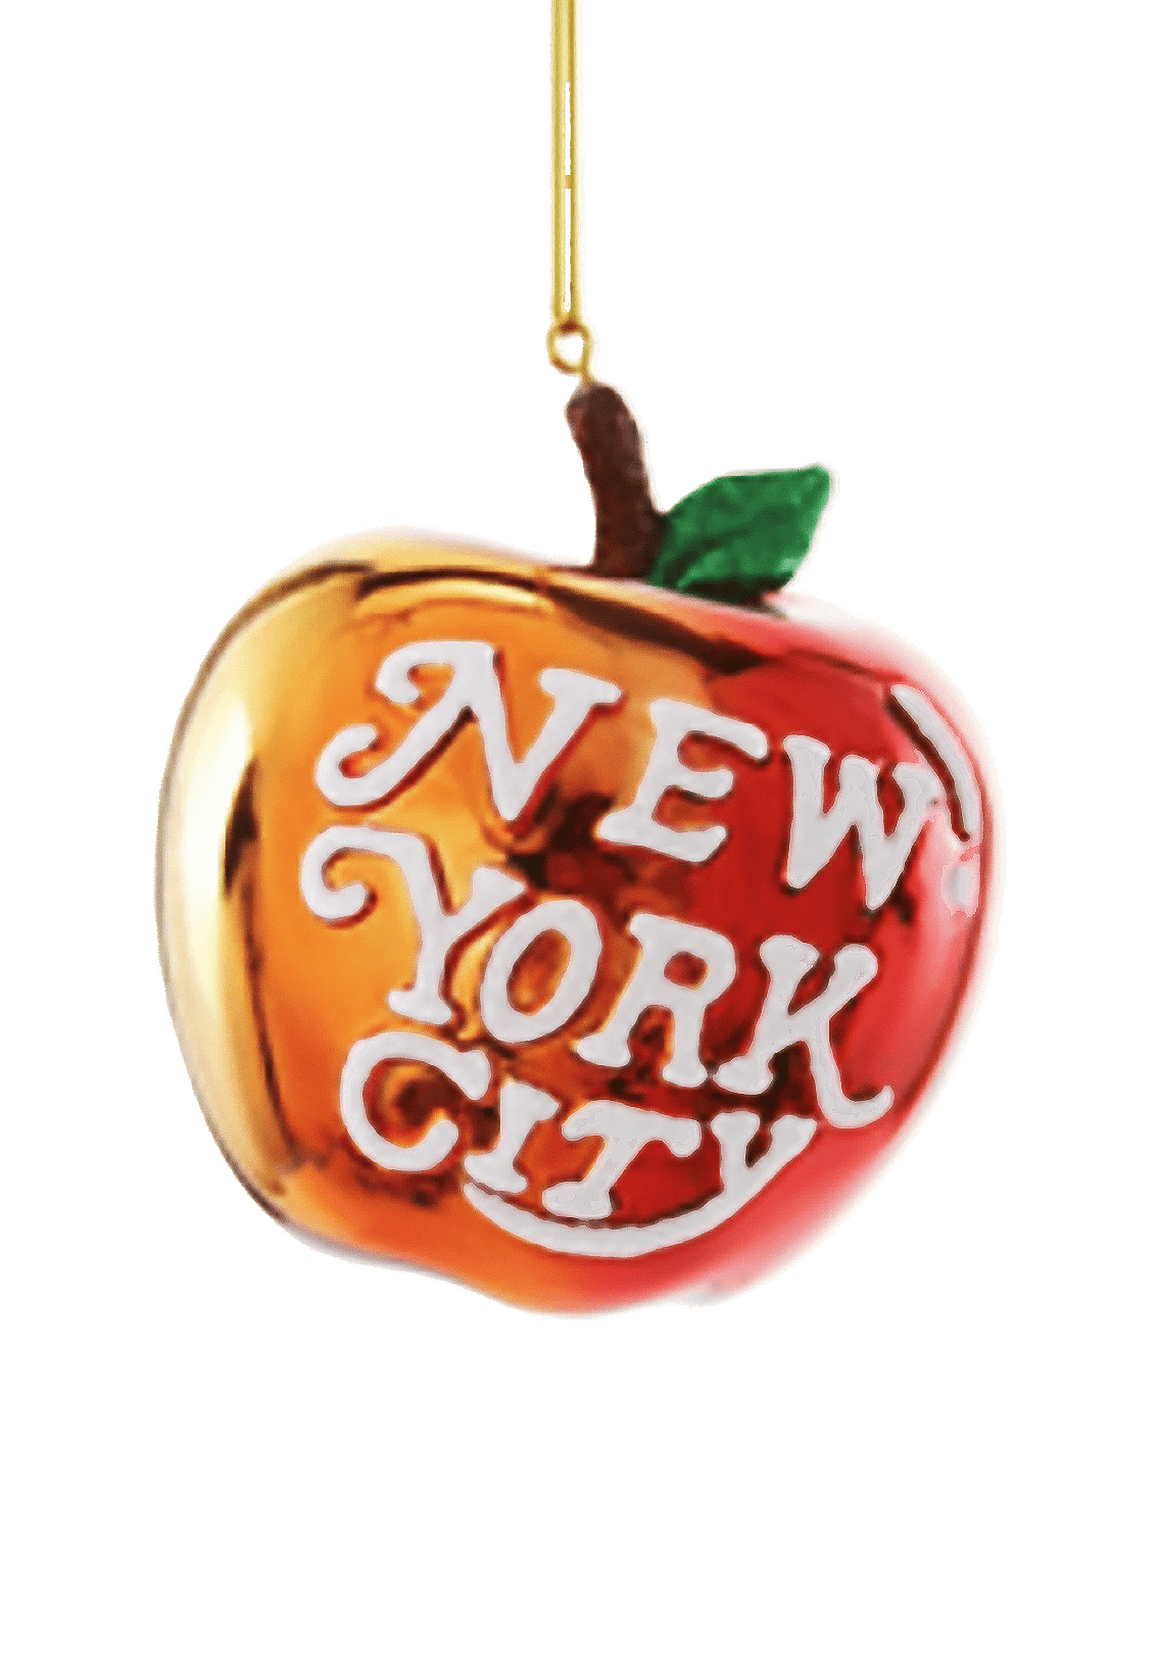 New York City Big Apple Glass Christmas Ornament - Bensgarden.com